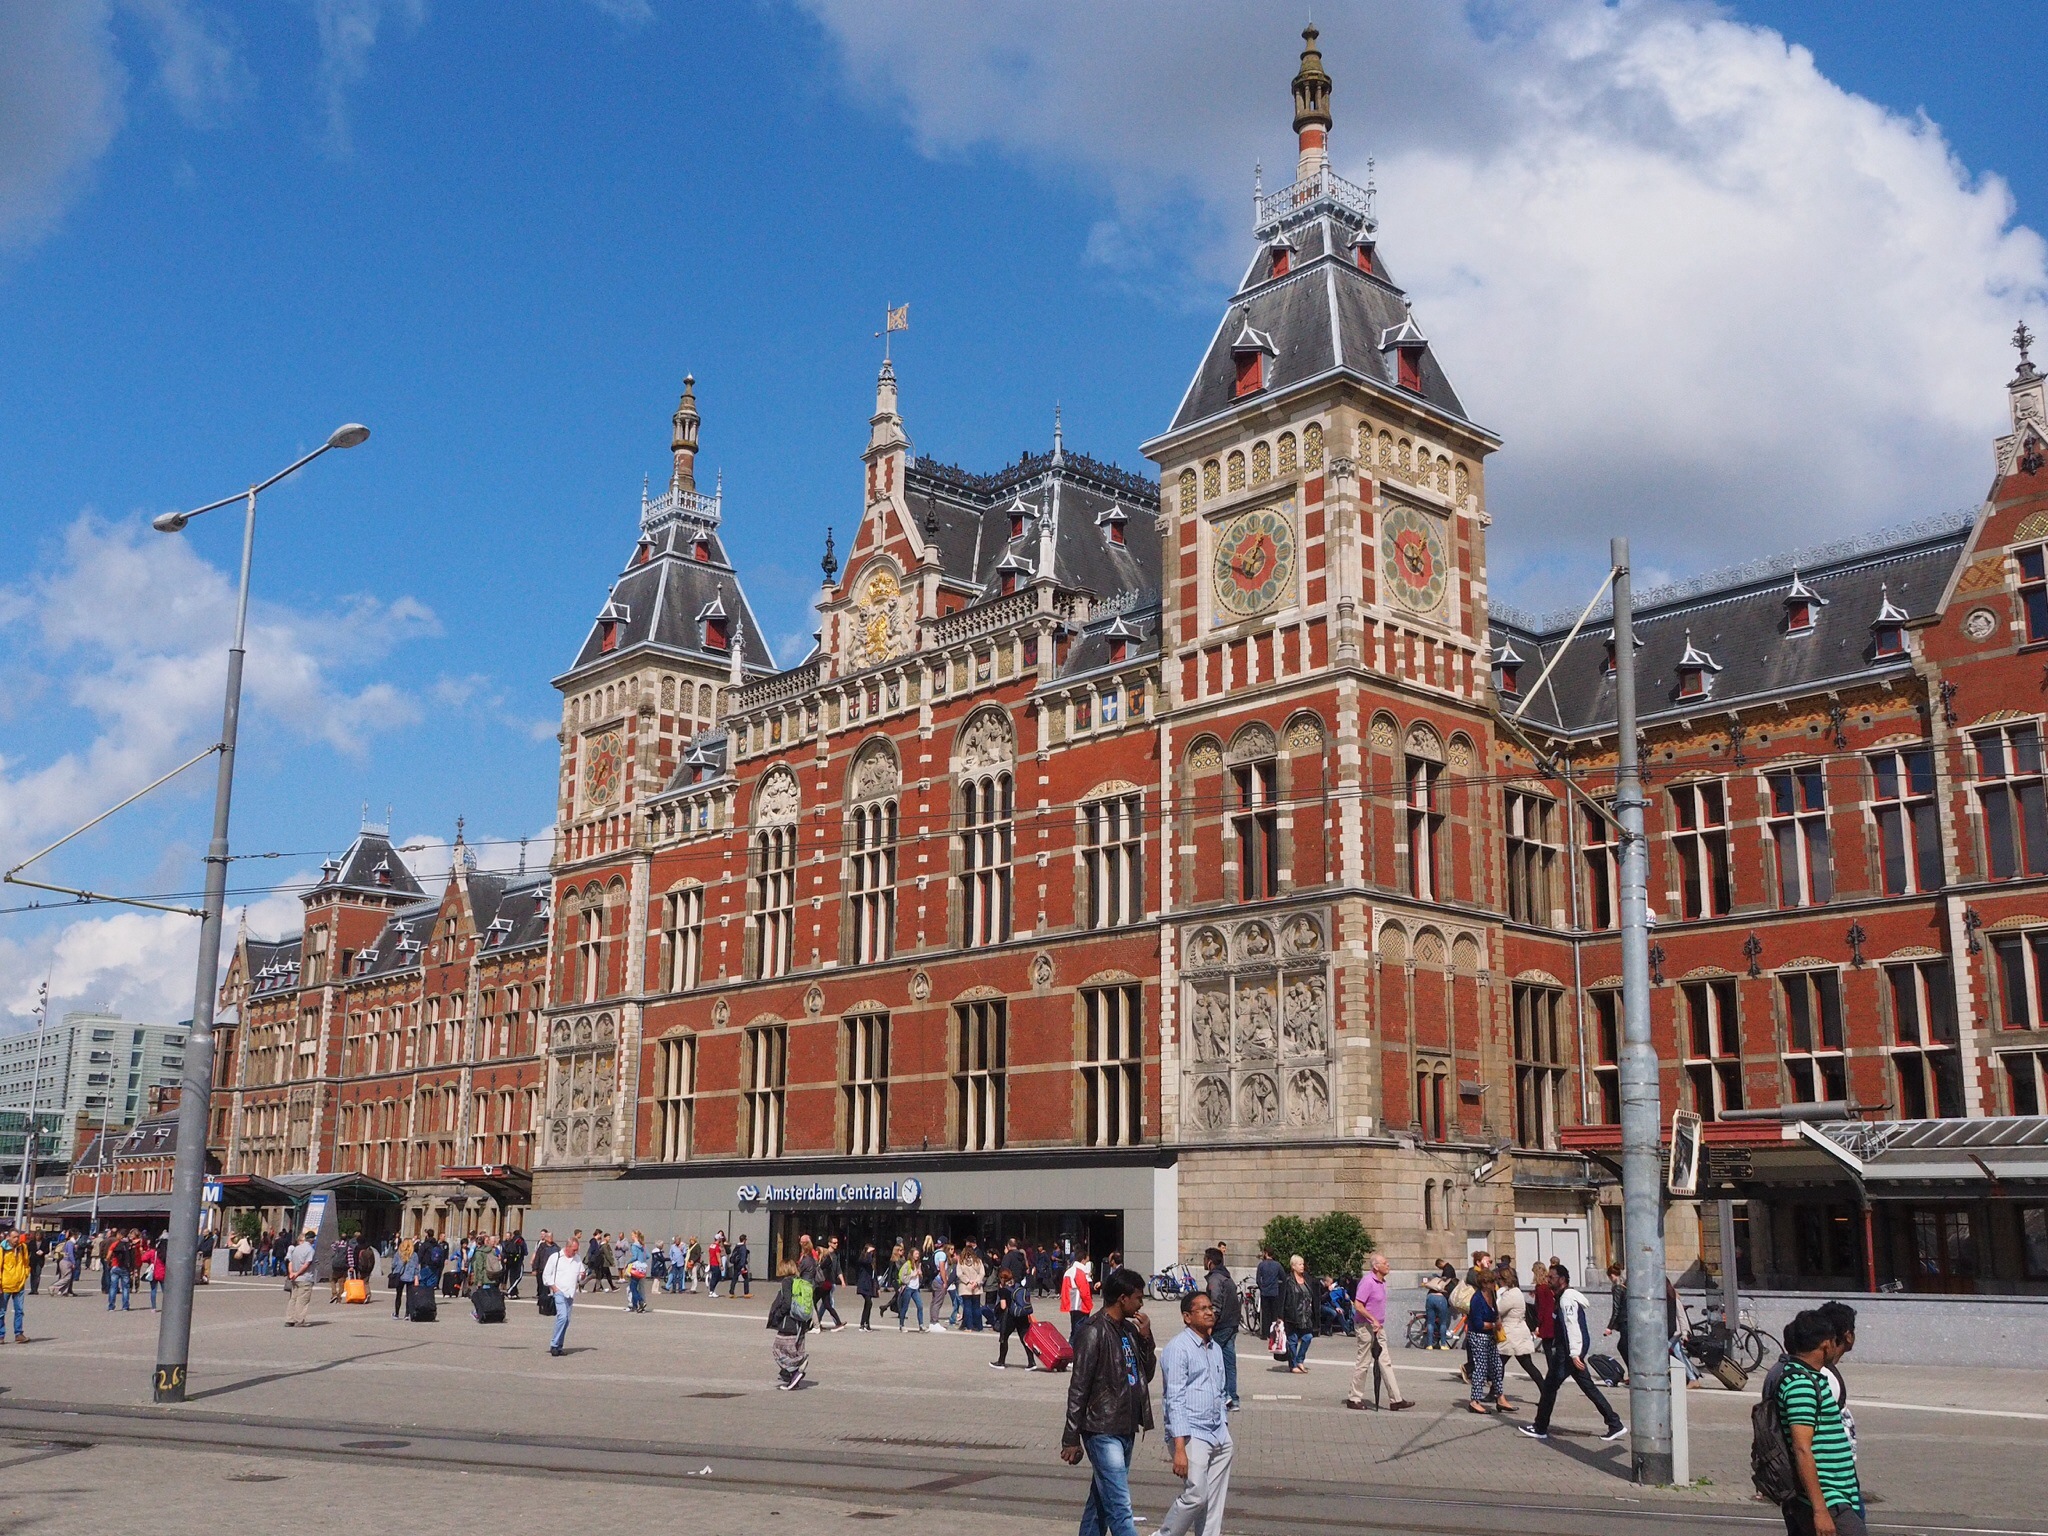 Amsterdam Centraal, der Hauptbahnhof